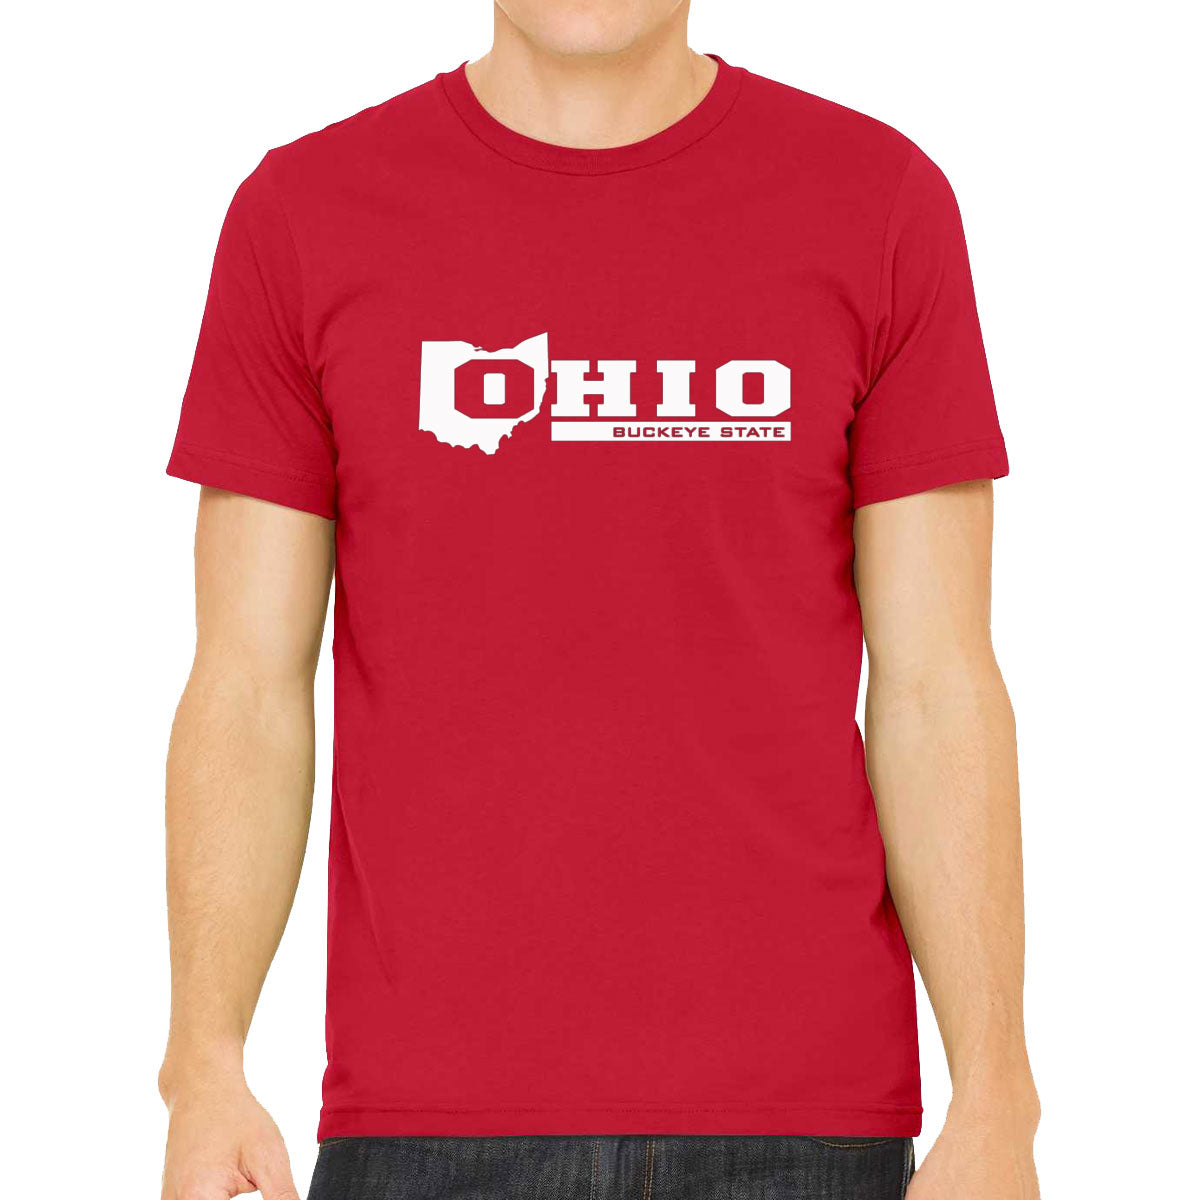 Ohio Buckeye State Men's T-shirt